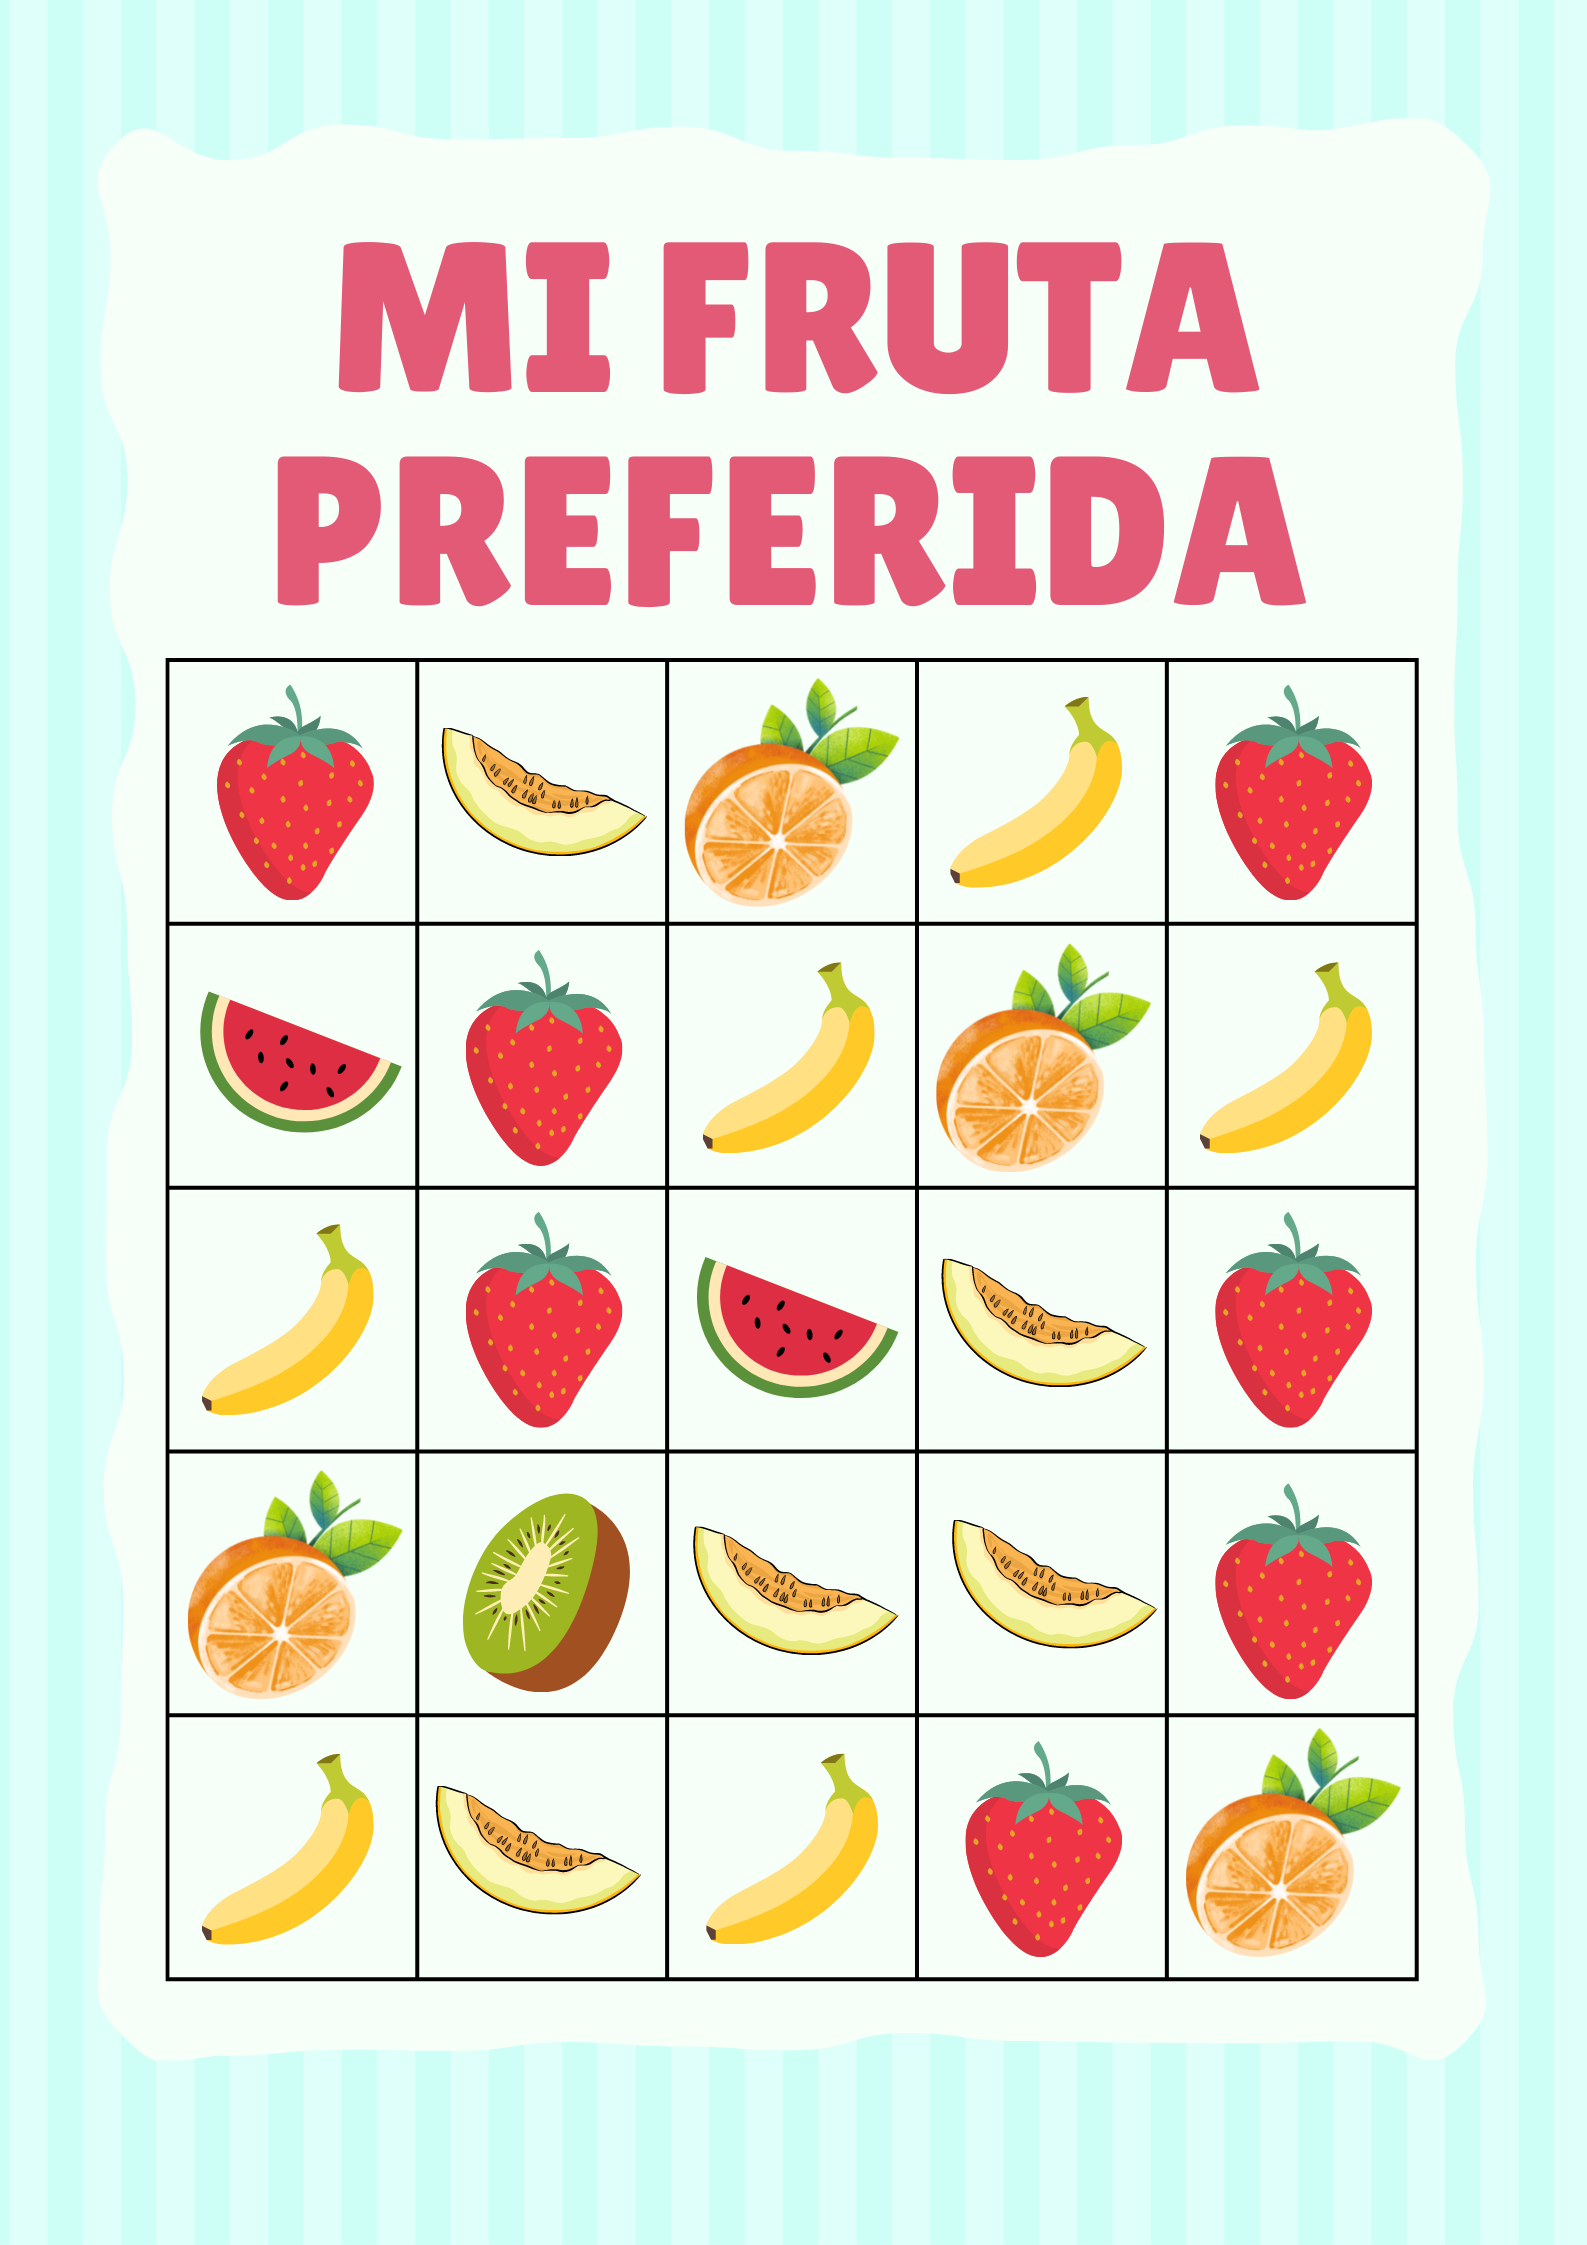 Imagen con una tabla rellena de diferentes frutas repetidas un número de veces